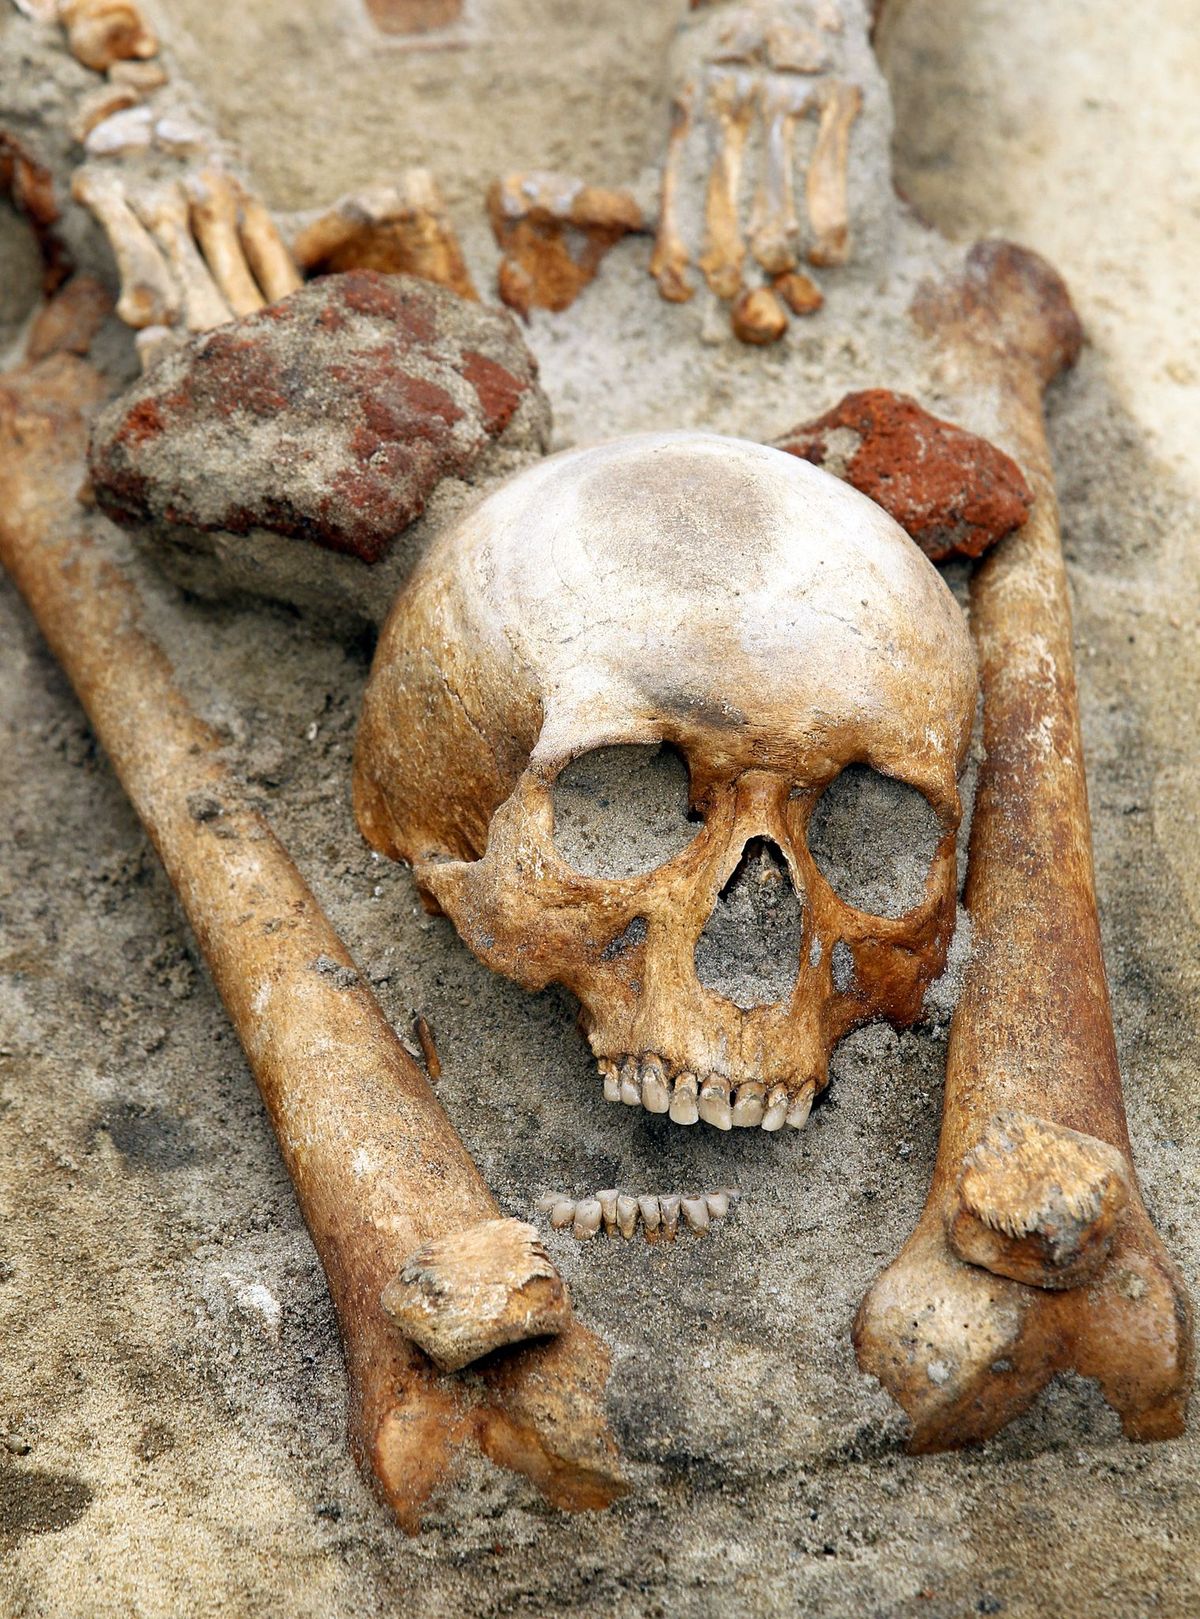 Poolse archeologen denken dat dit skelet waarvan het hoofd tussen de benen werd gevonden duidt op de begrafenis van een vermeende vampier